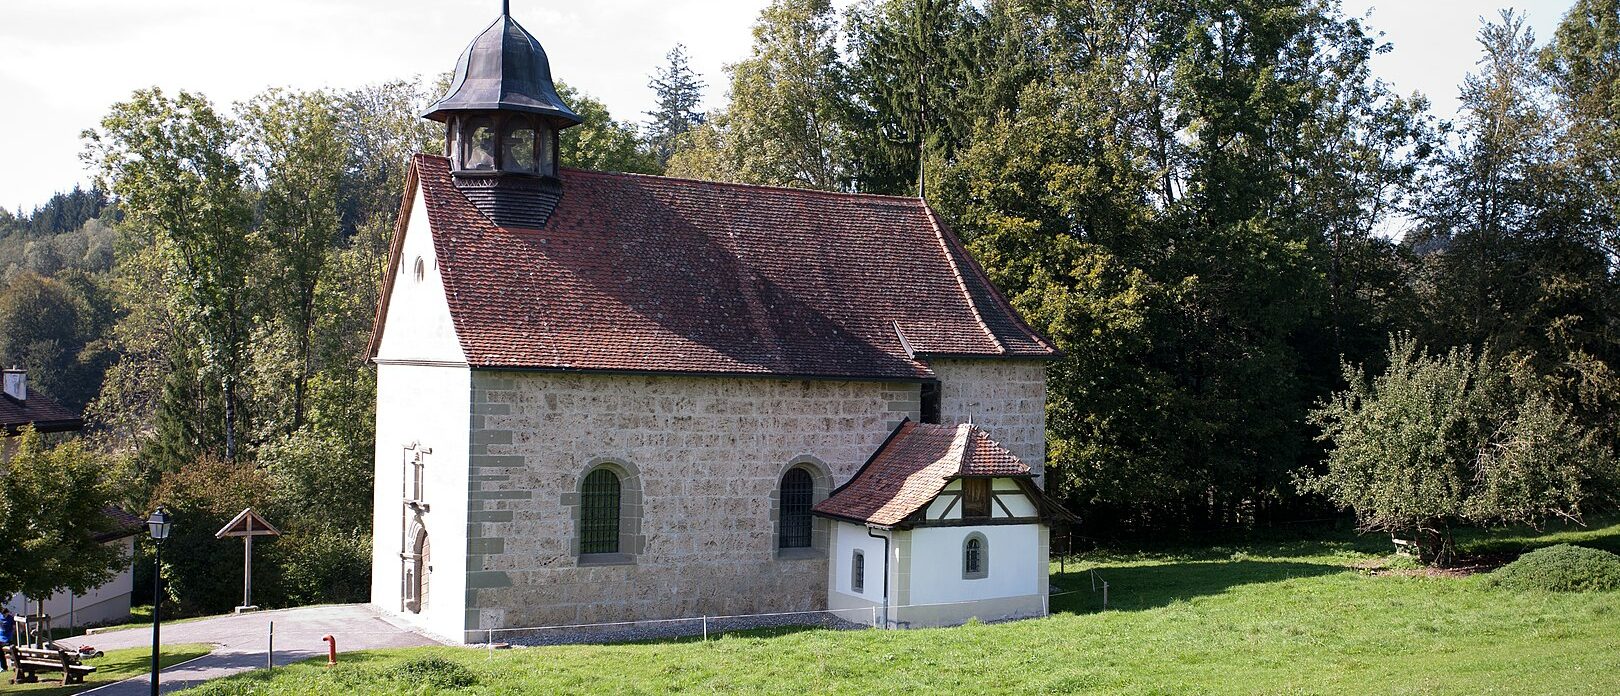 La chapelle Notre-Dame de Posat a été construite au XVIIe siècle | © FotoRots.ch/Wikimedia Commons/CC BY-SA 3.0